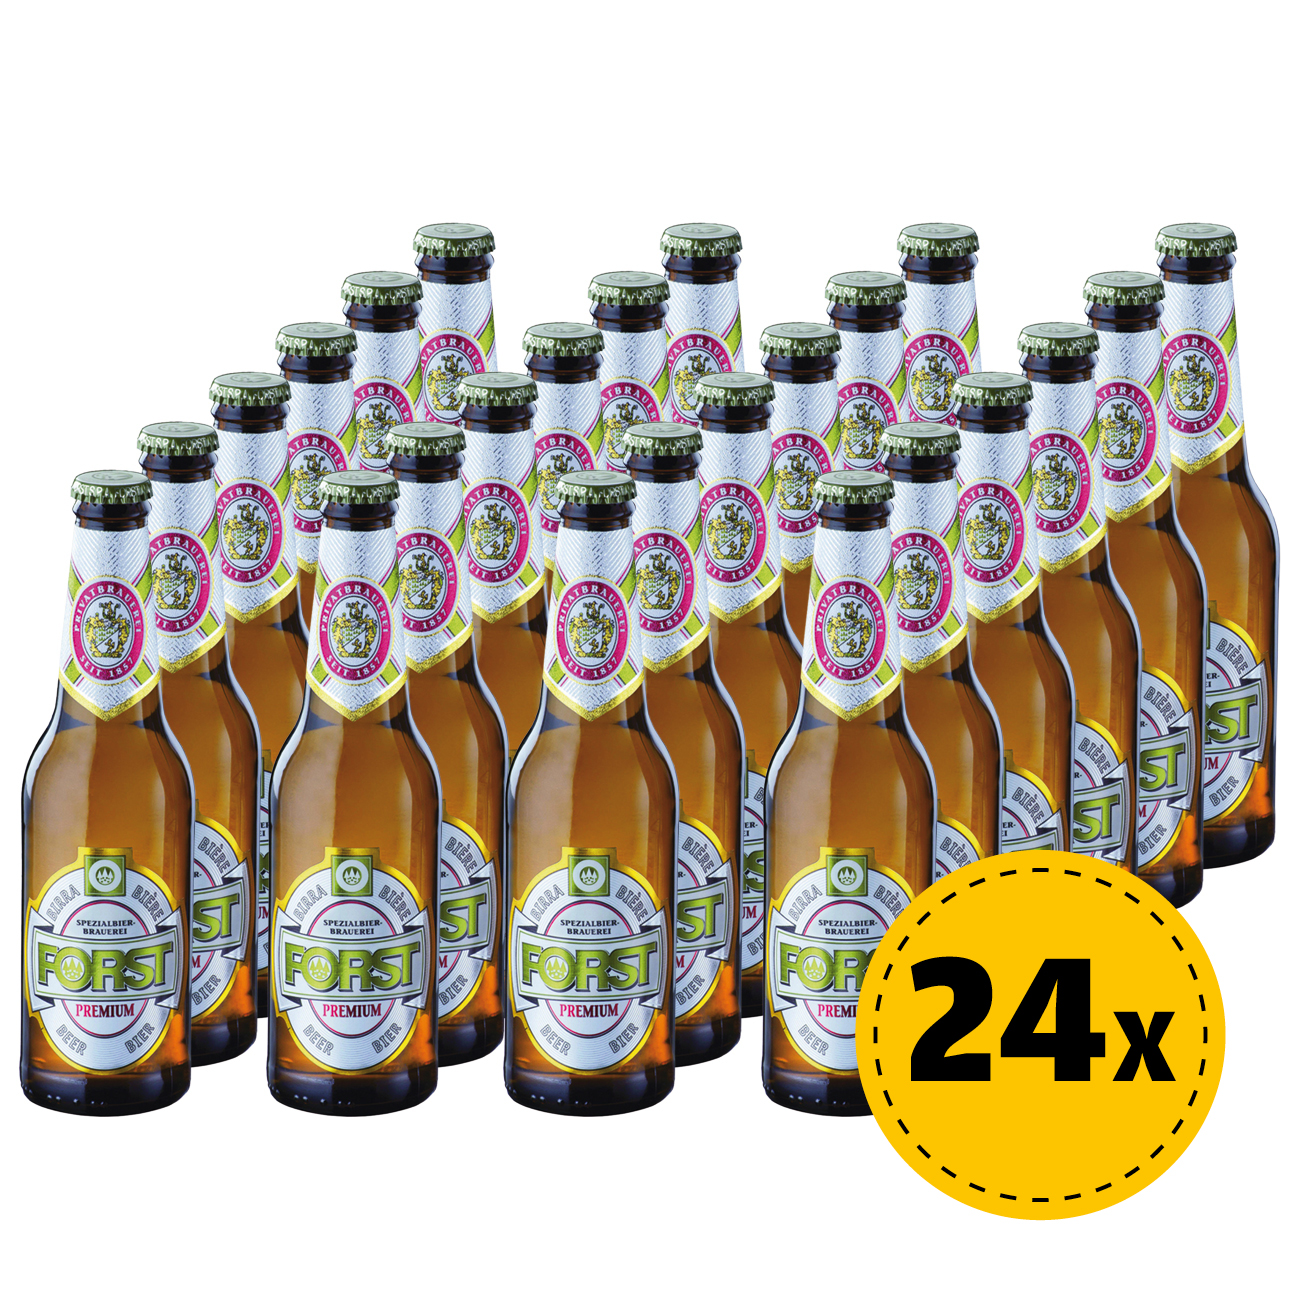 24x Birra Forst Premium